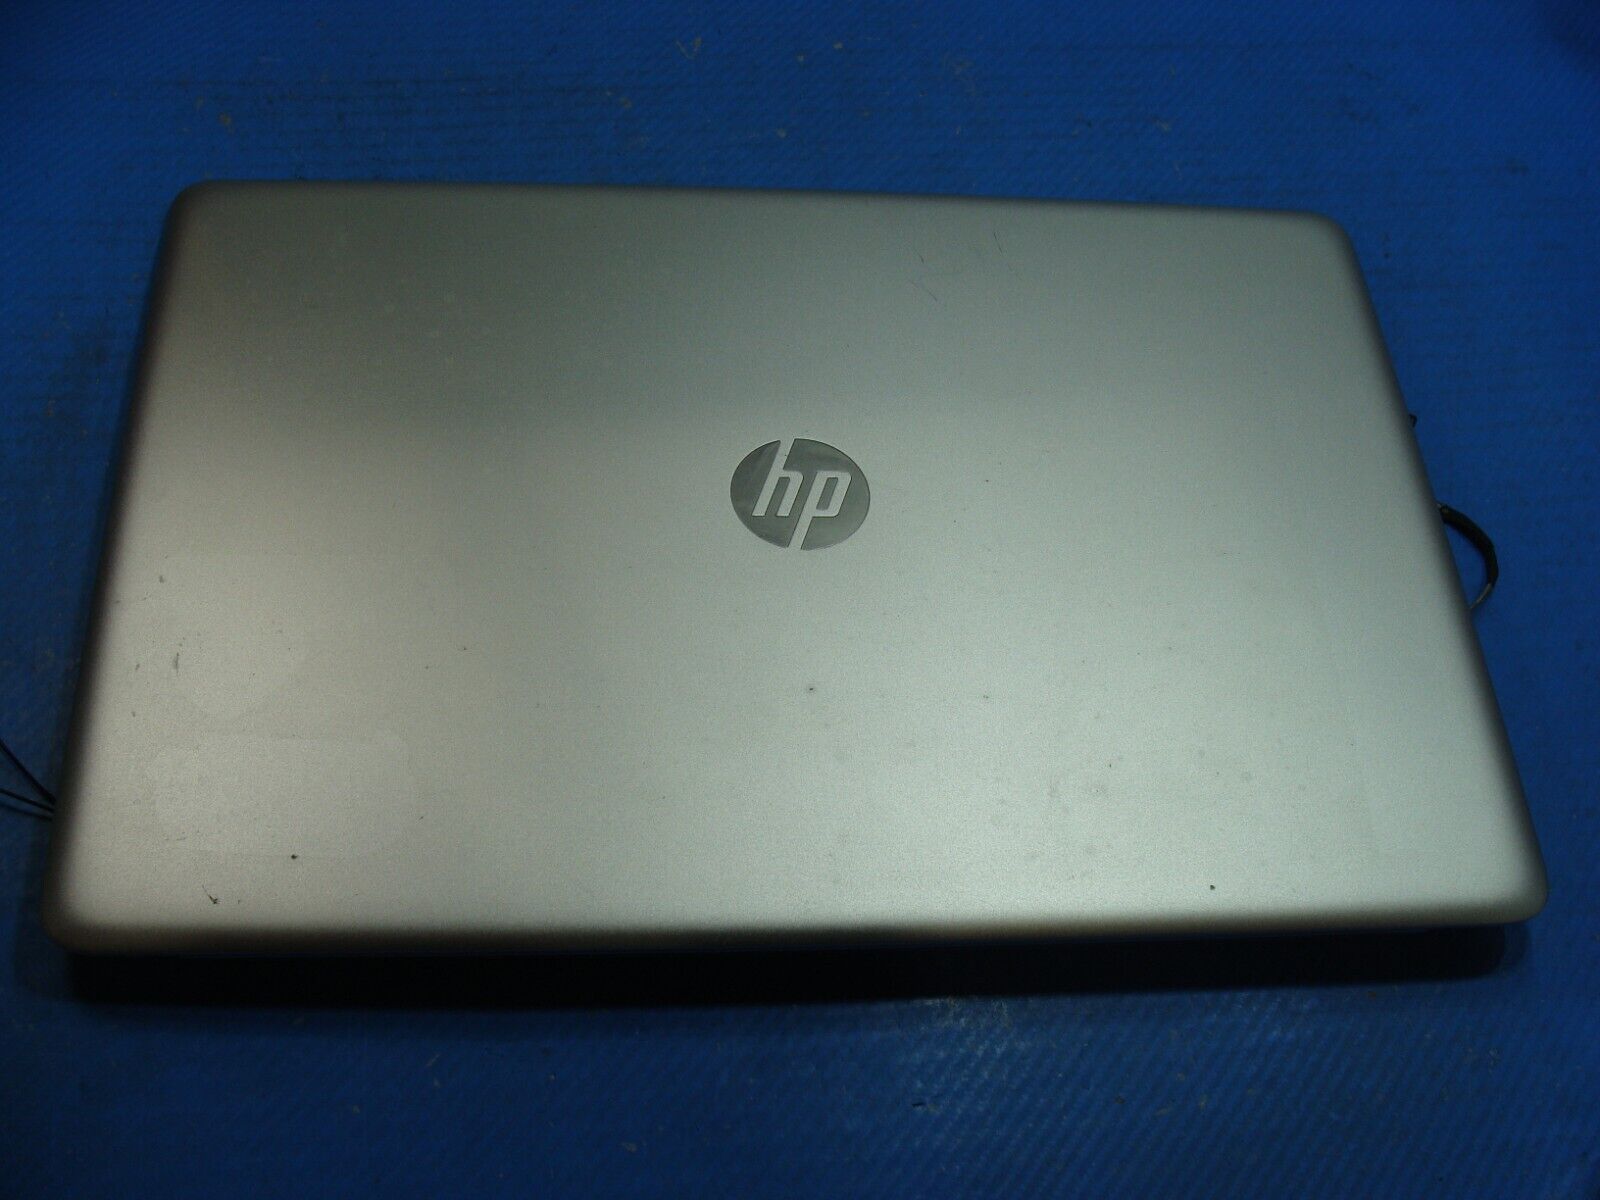 HP ENVY m7-n109dx 17.3